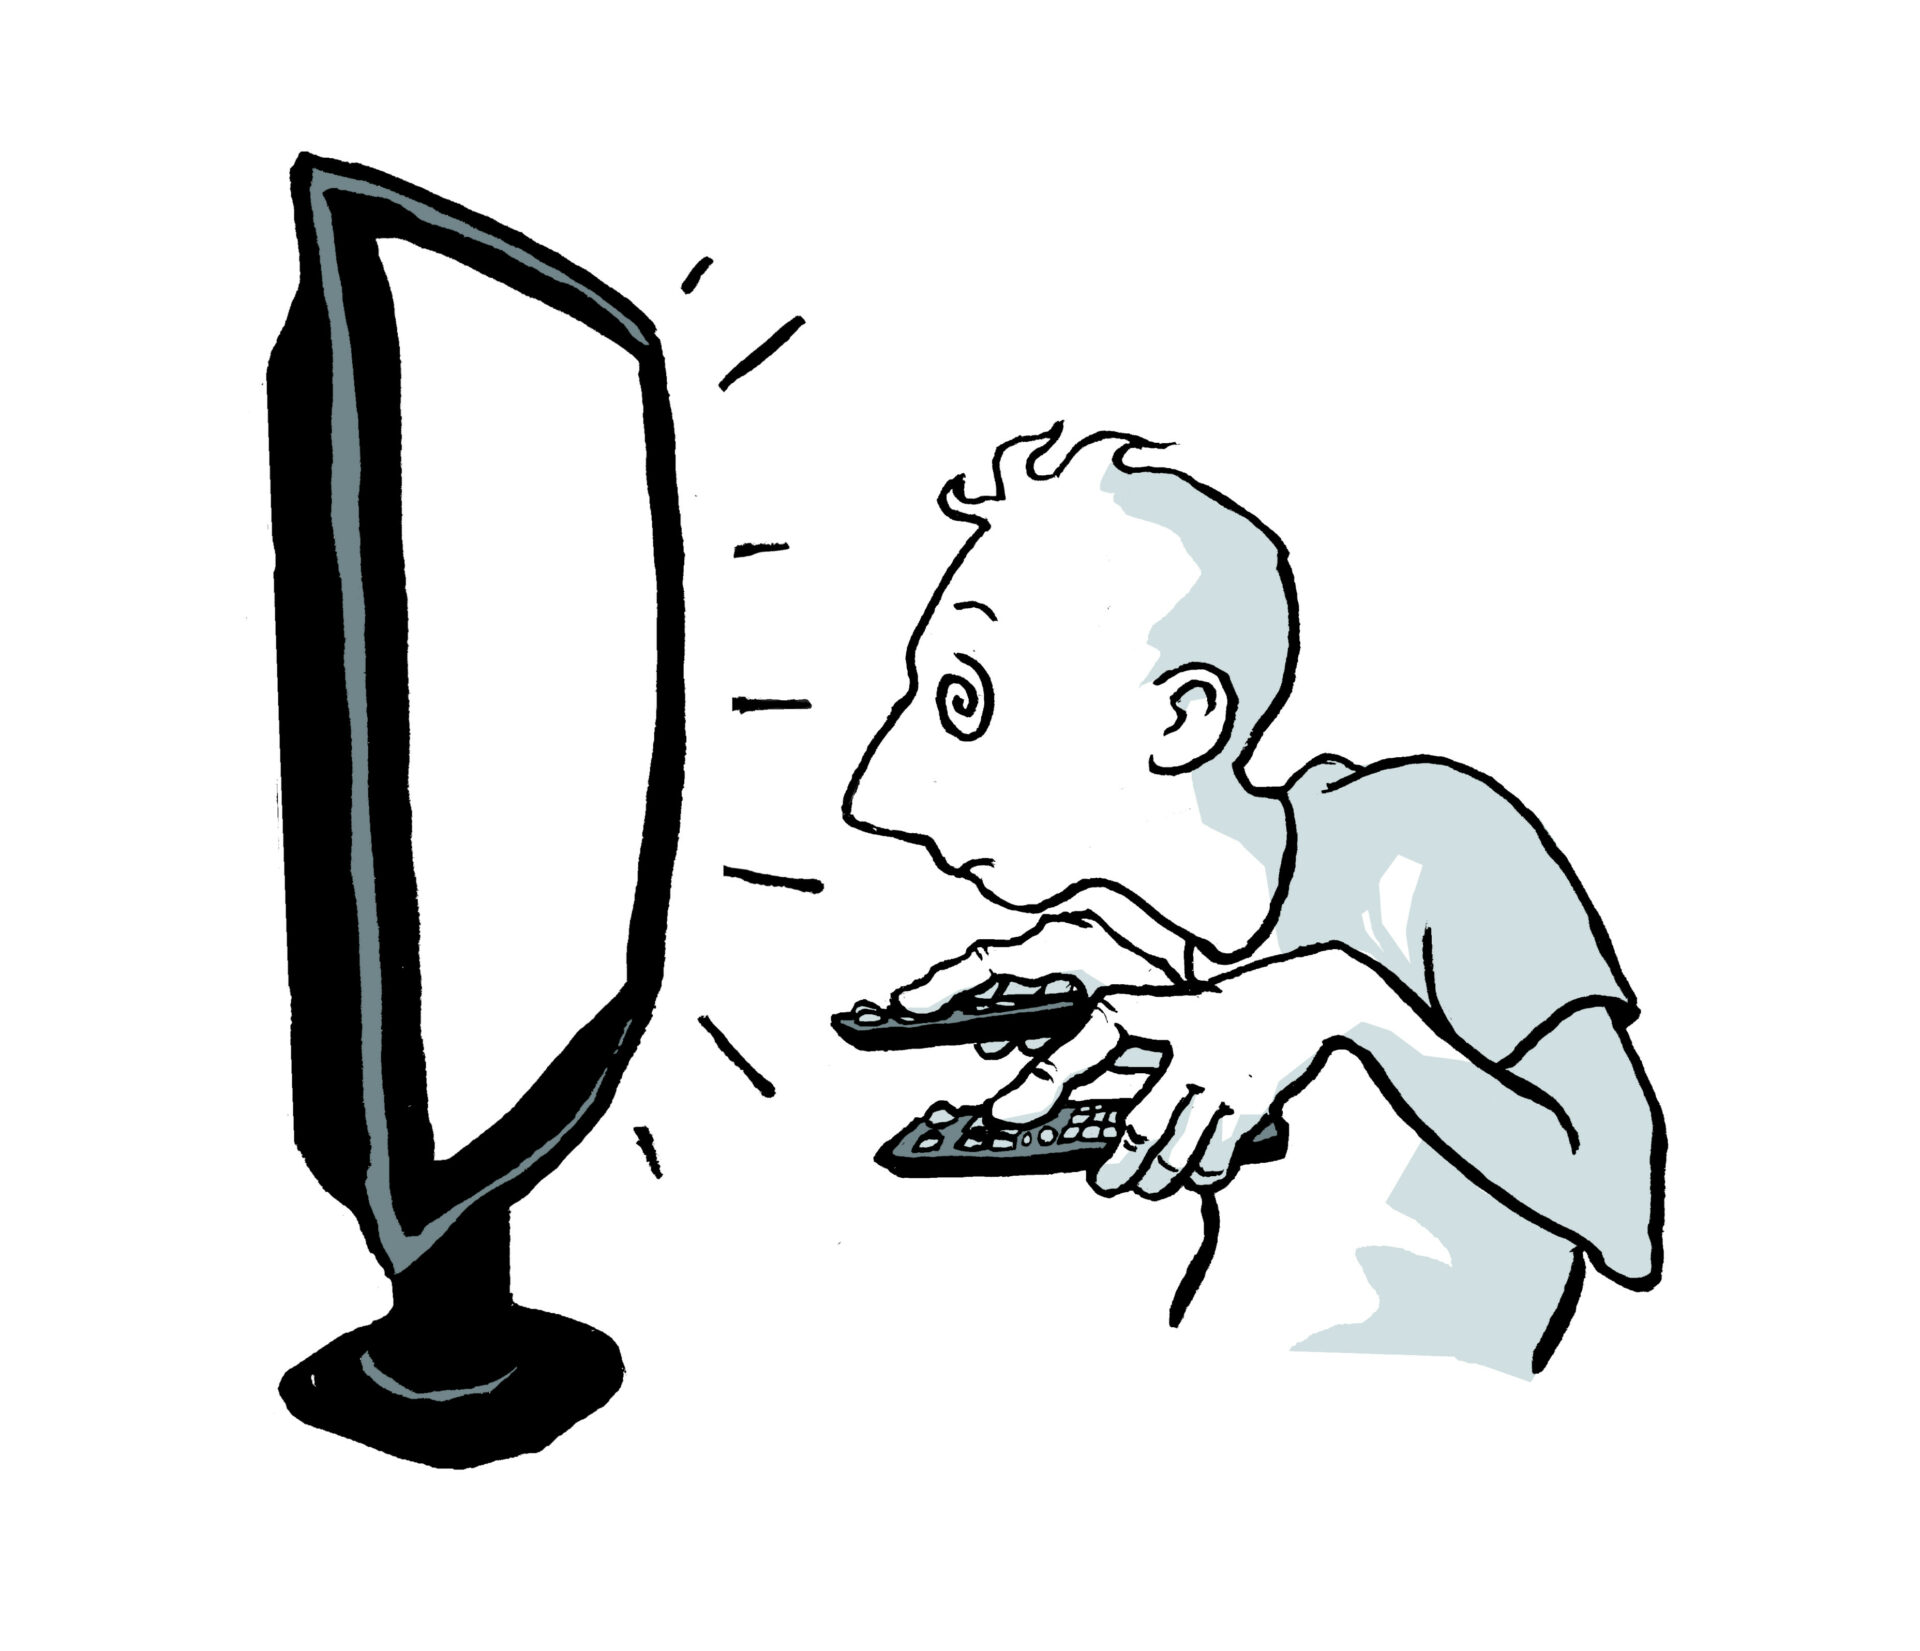 Piirroskuvassa vasemmalla on suurensuuri tietokoneen tai television ruutu, Oikealla oleva ihminen tuijottaa ruutua lasittunein silmin molemmissa käsissään kaukosäätimet.